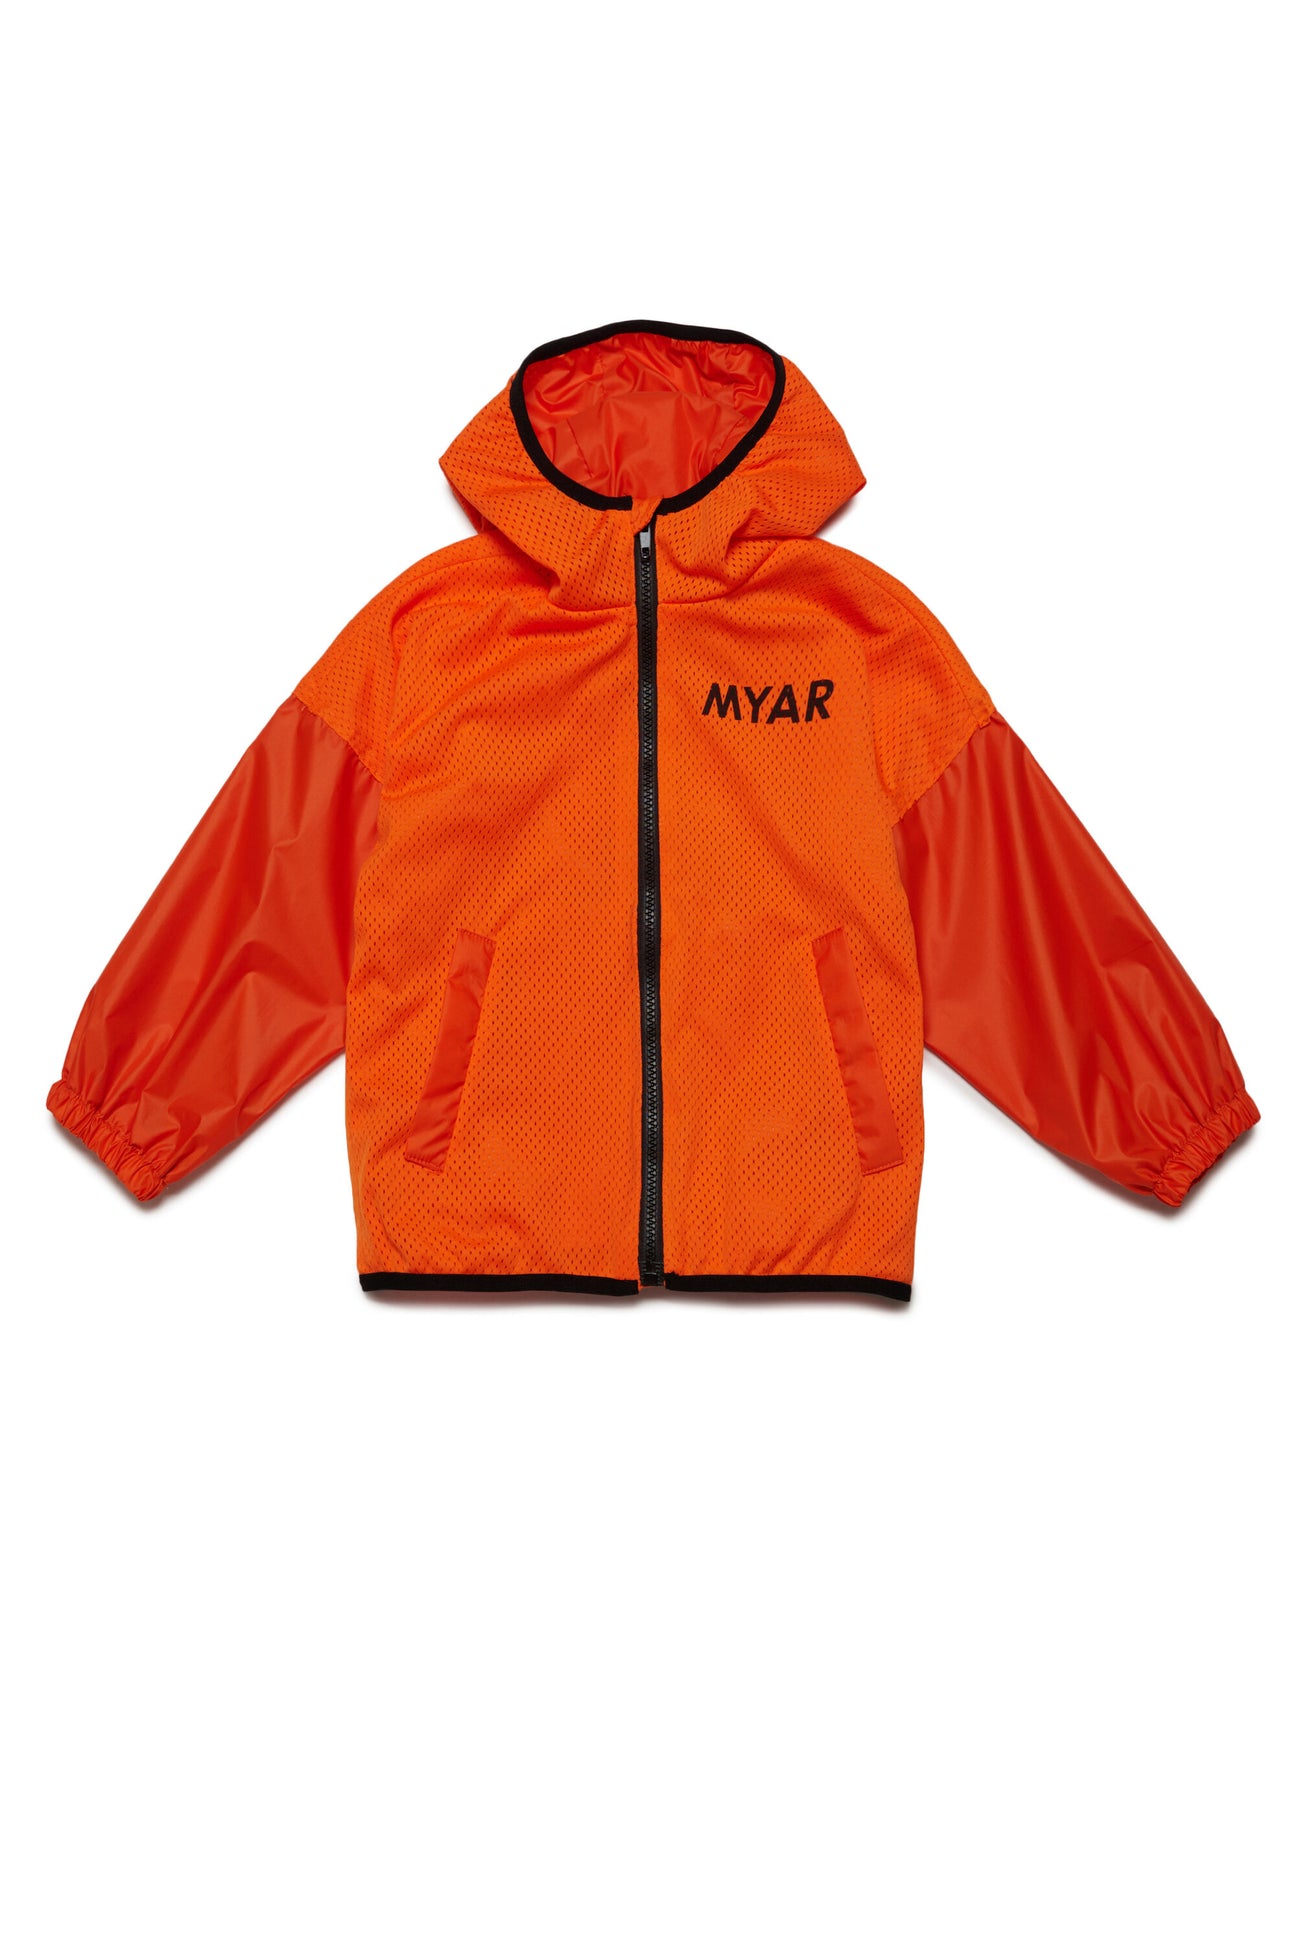 Windbreaker jacket with MYAR logo Windbreaker jacket with MYAR logo